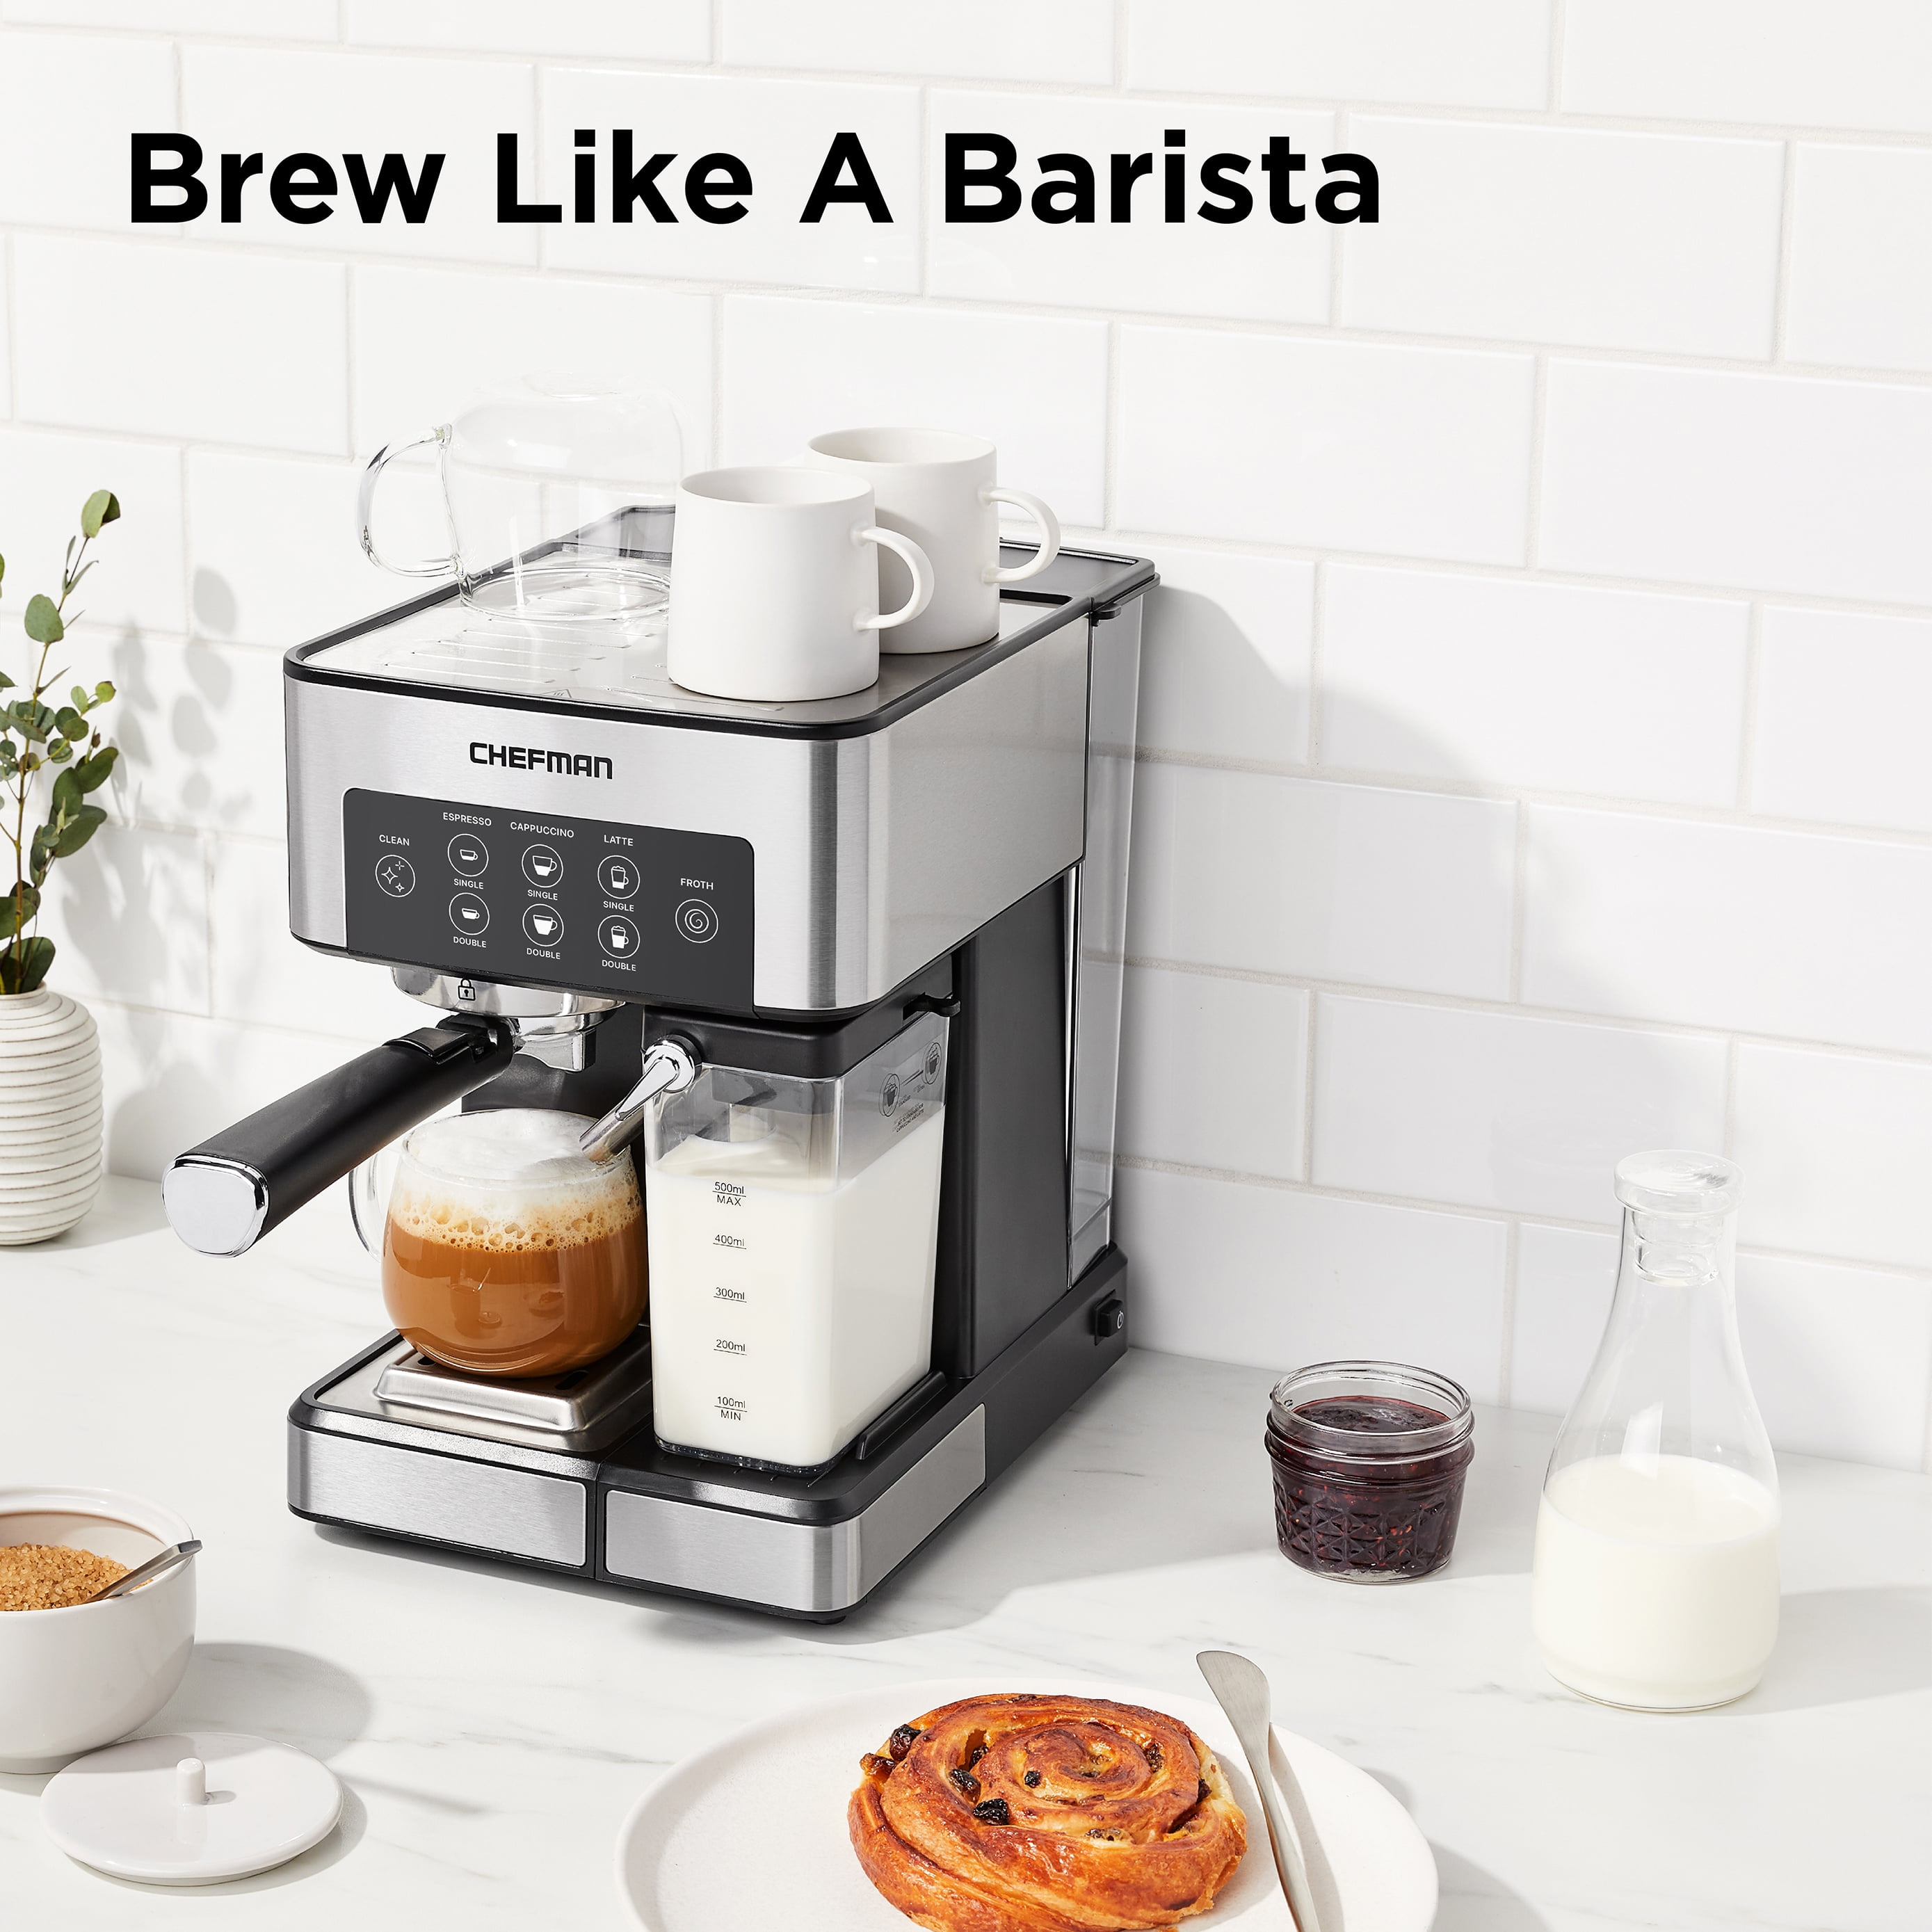 Langskomen tijger Haven Chefman Barista Pro 6-in-1 Espresso Machine with Built-In Milk Frother,  15-BAR Pump, Digital Display, XL 1.8-L Water Reservoir, Stainless Steel,  New - Walmart.com